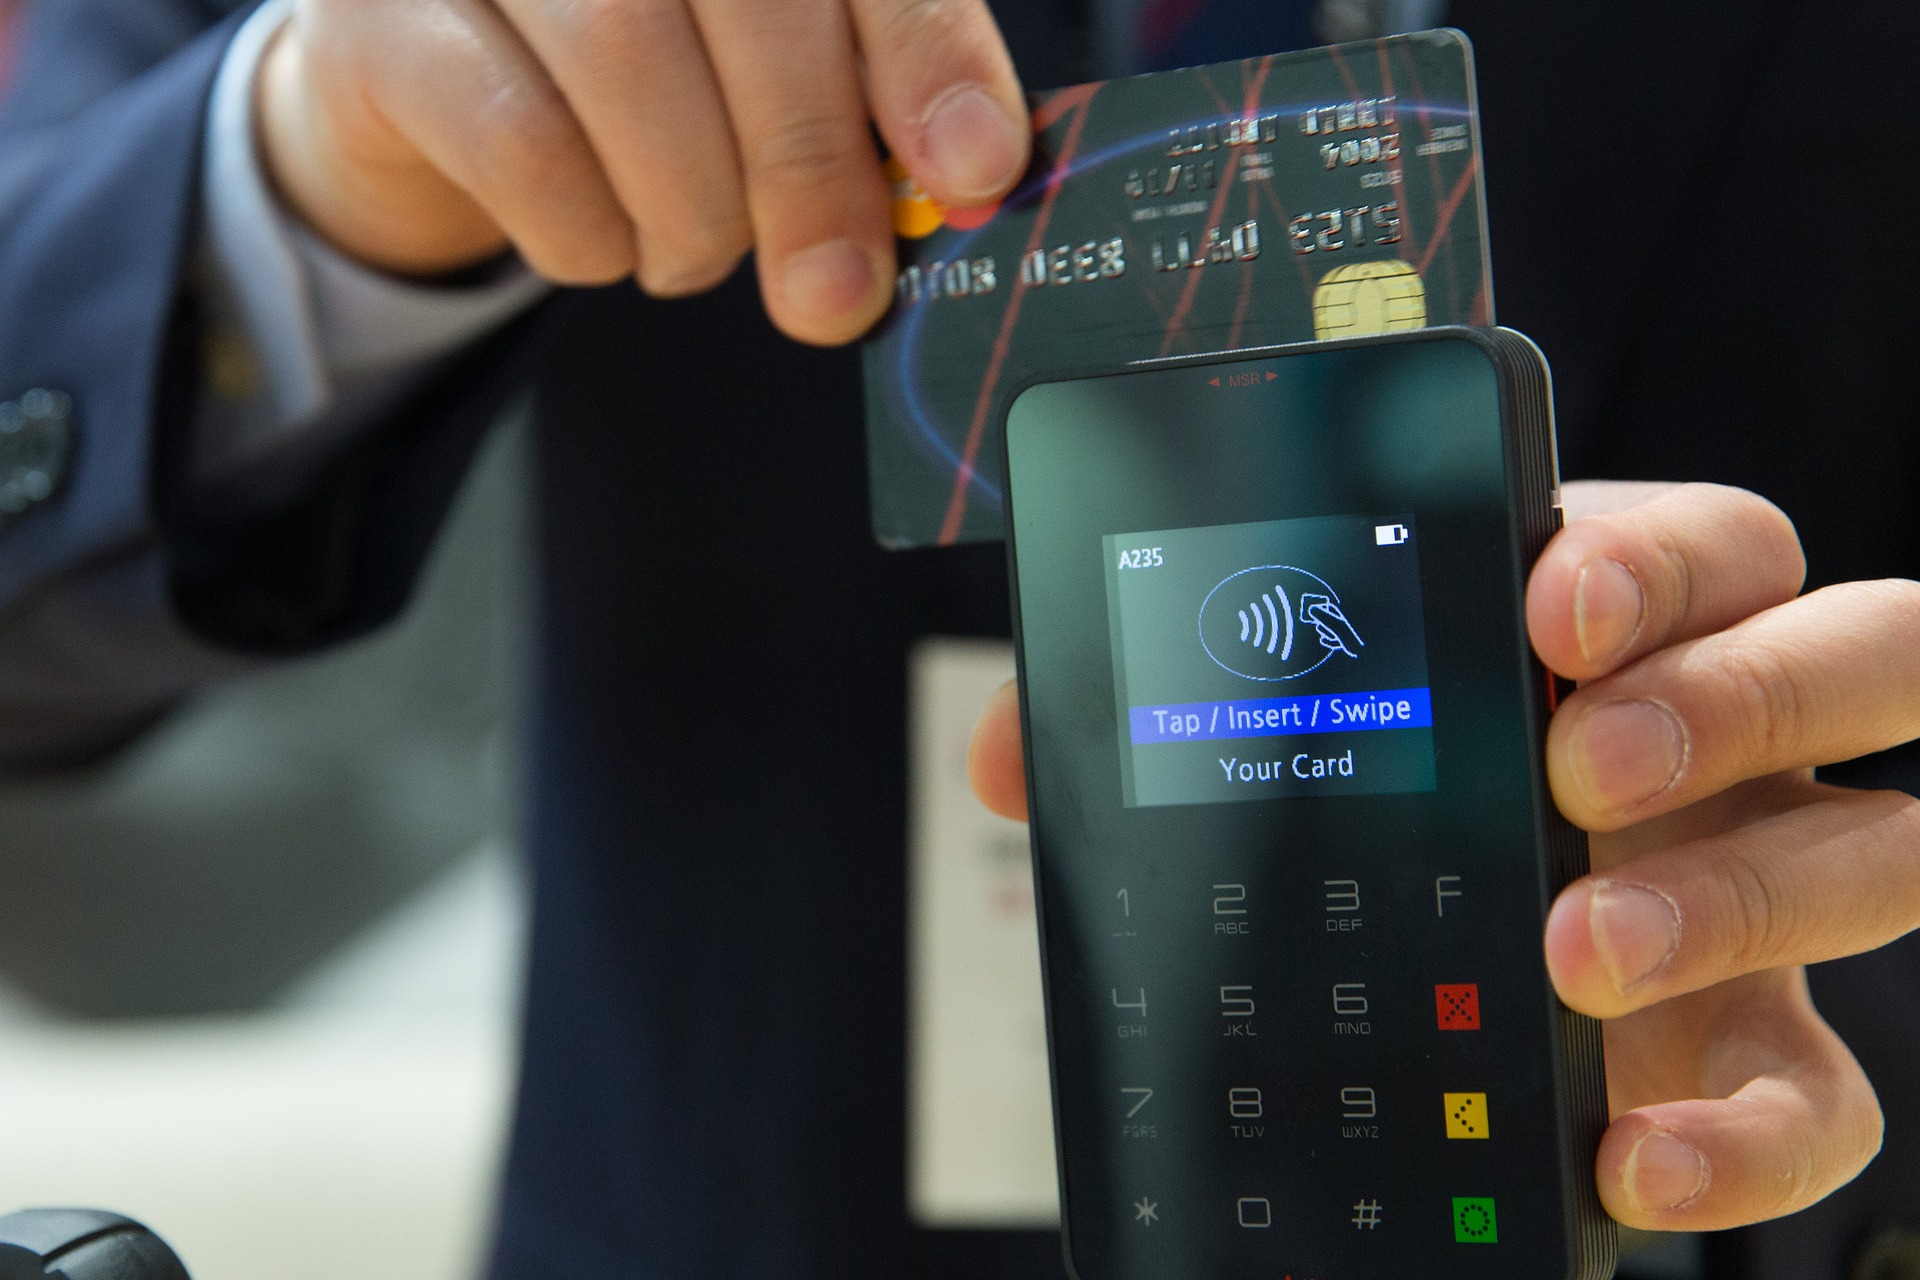 Hardware Wallet Developer Ledger Introduces a Debit Card ...